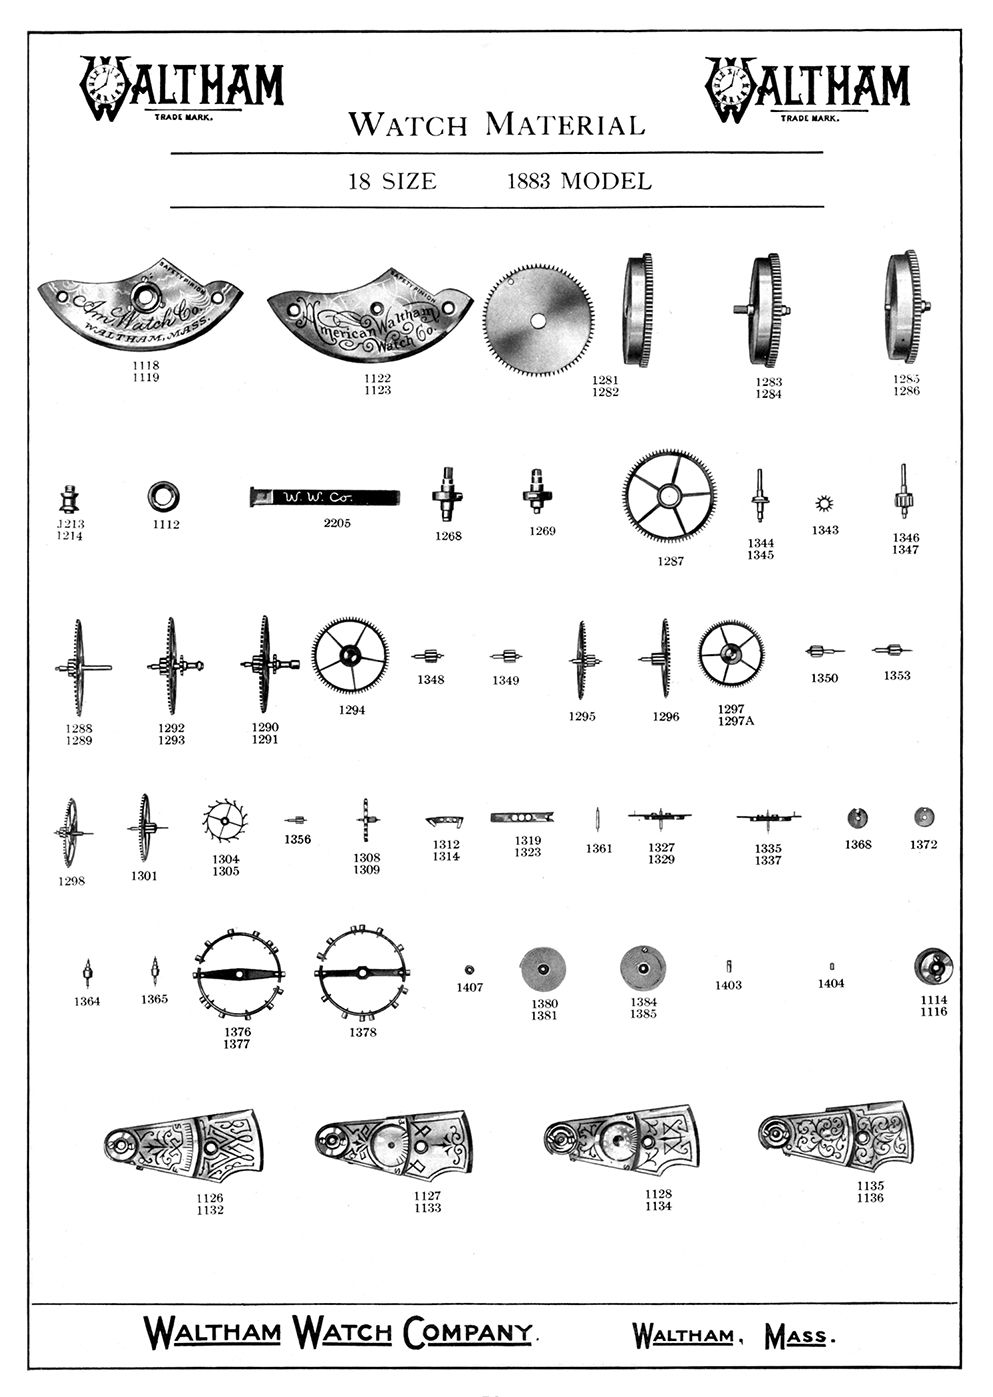 Waltham 18s 1883 Parts Diagram